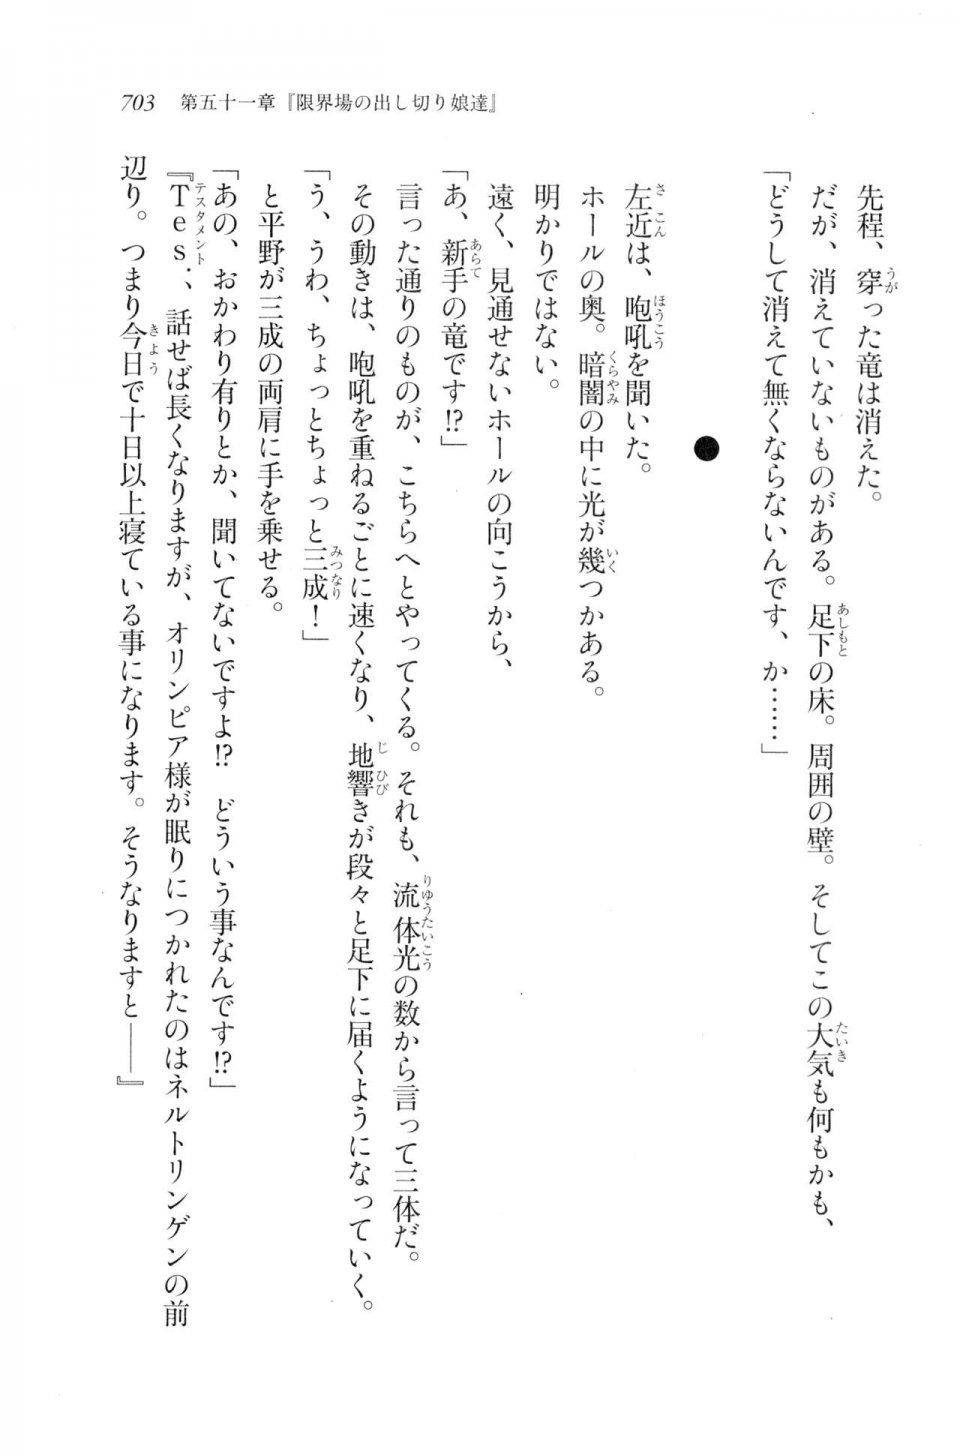 Kyoukai Senjou no Horizon LN Vol 20(8B) - Photo #703